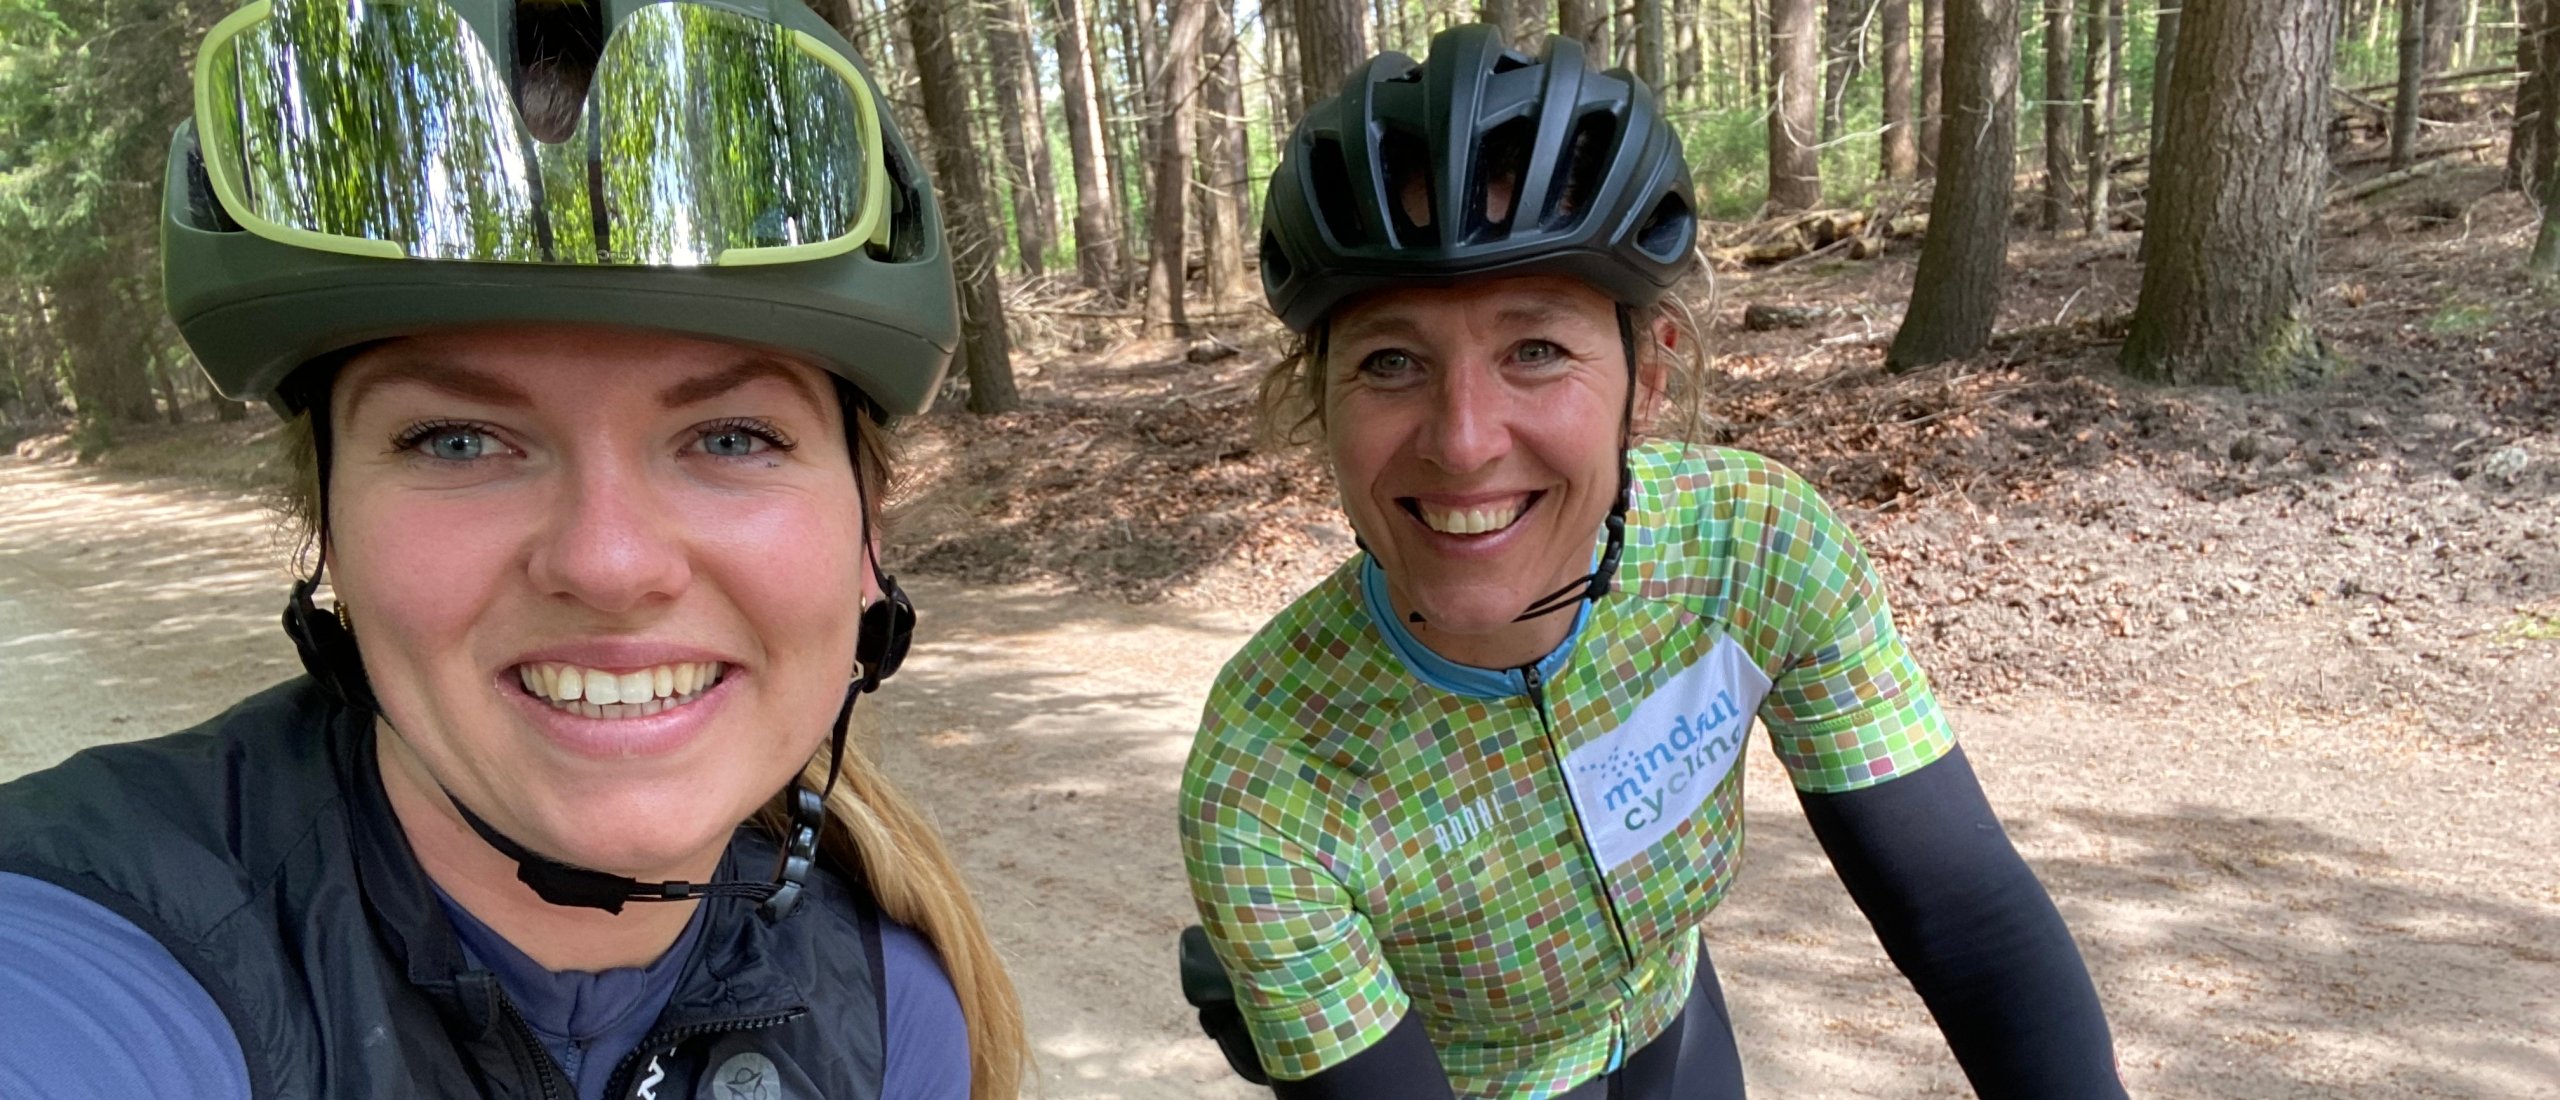 Op pad met Linda Beweegt, een lesje Mindful Cycling